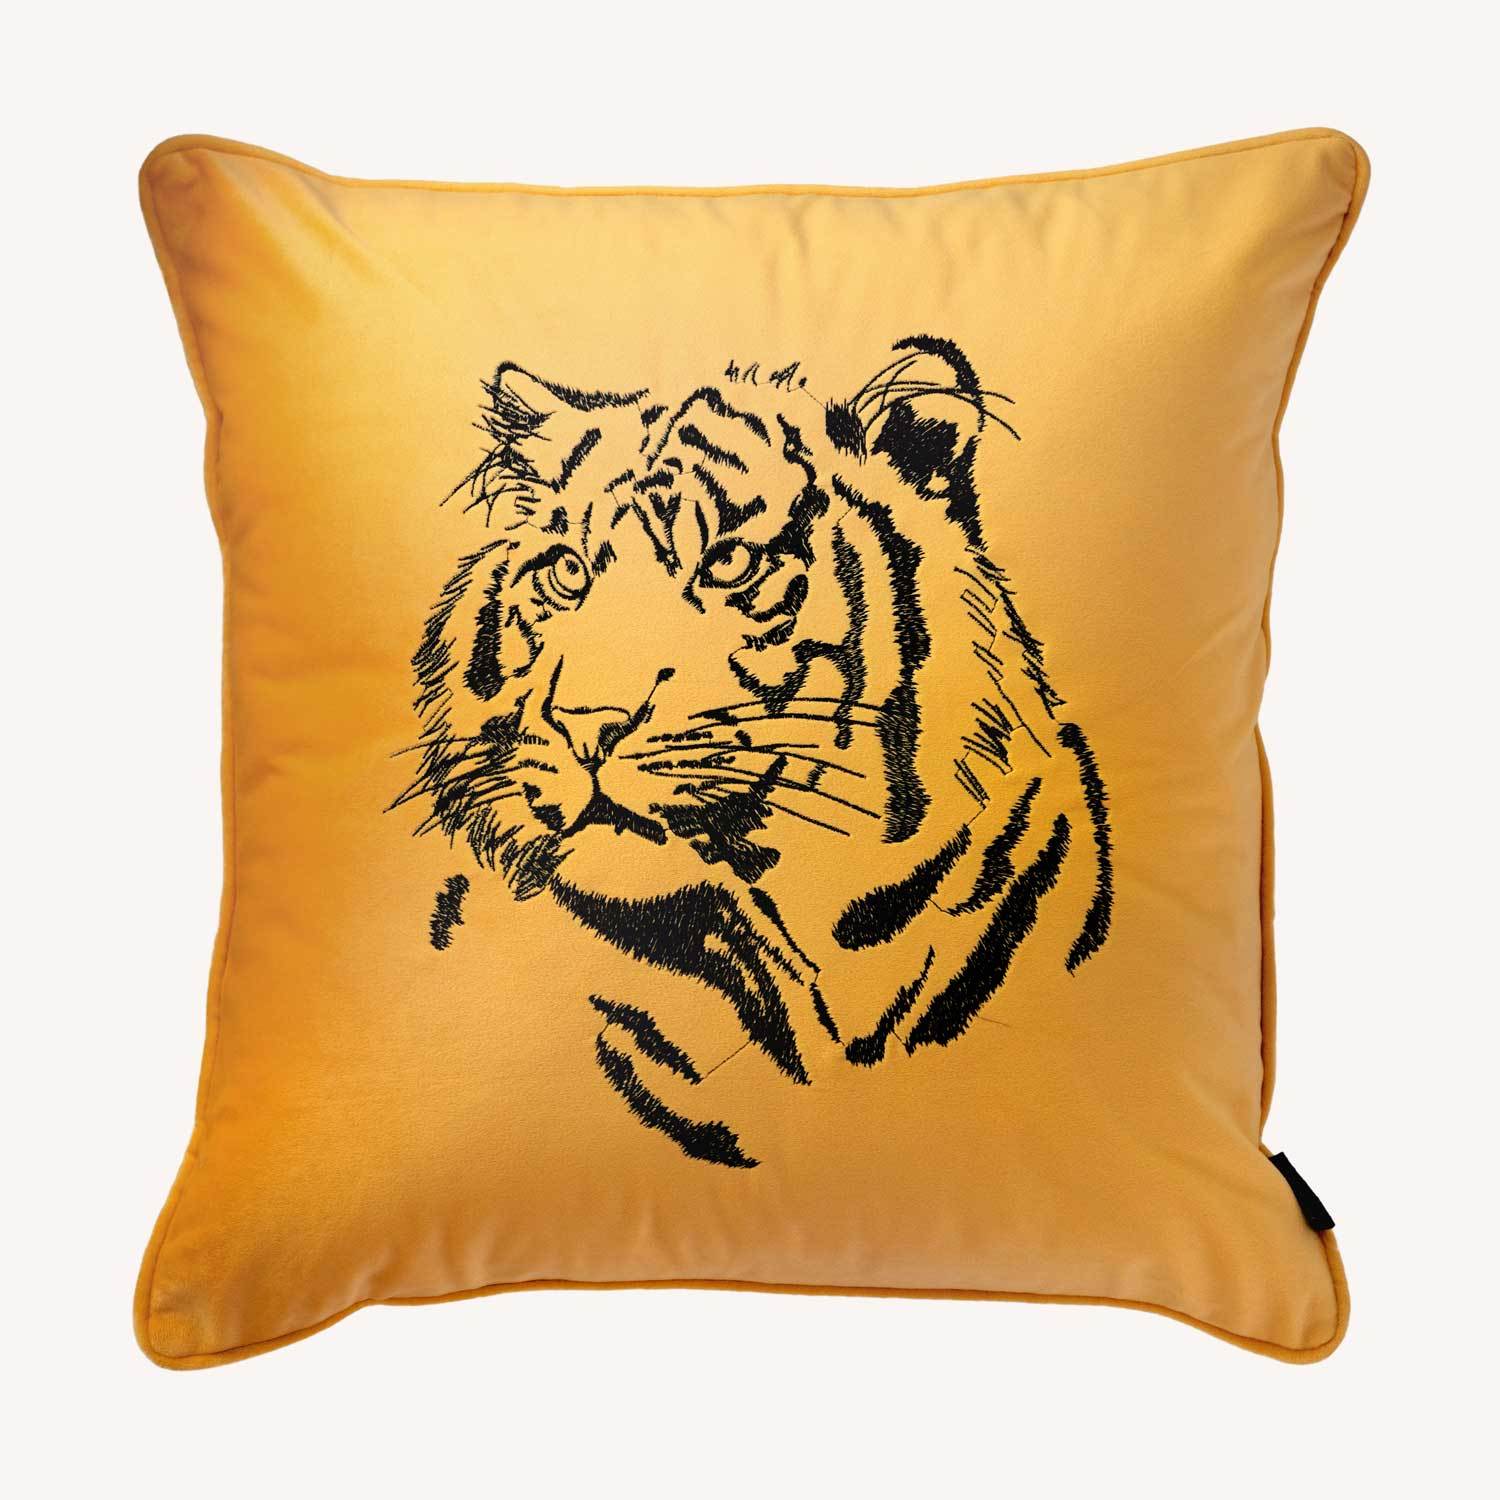 gult kuddfodral i sammet med motiv på en tiger och storlek 45x45cm